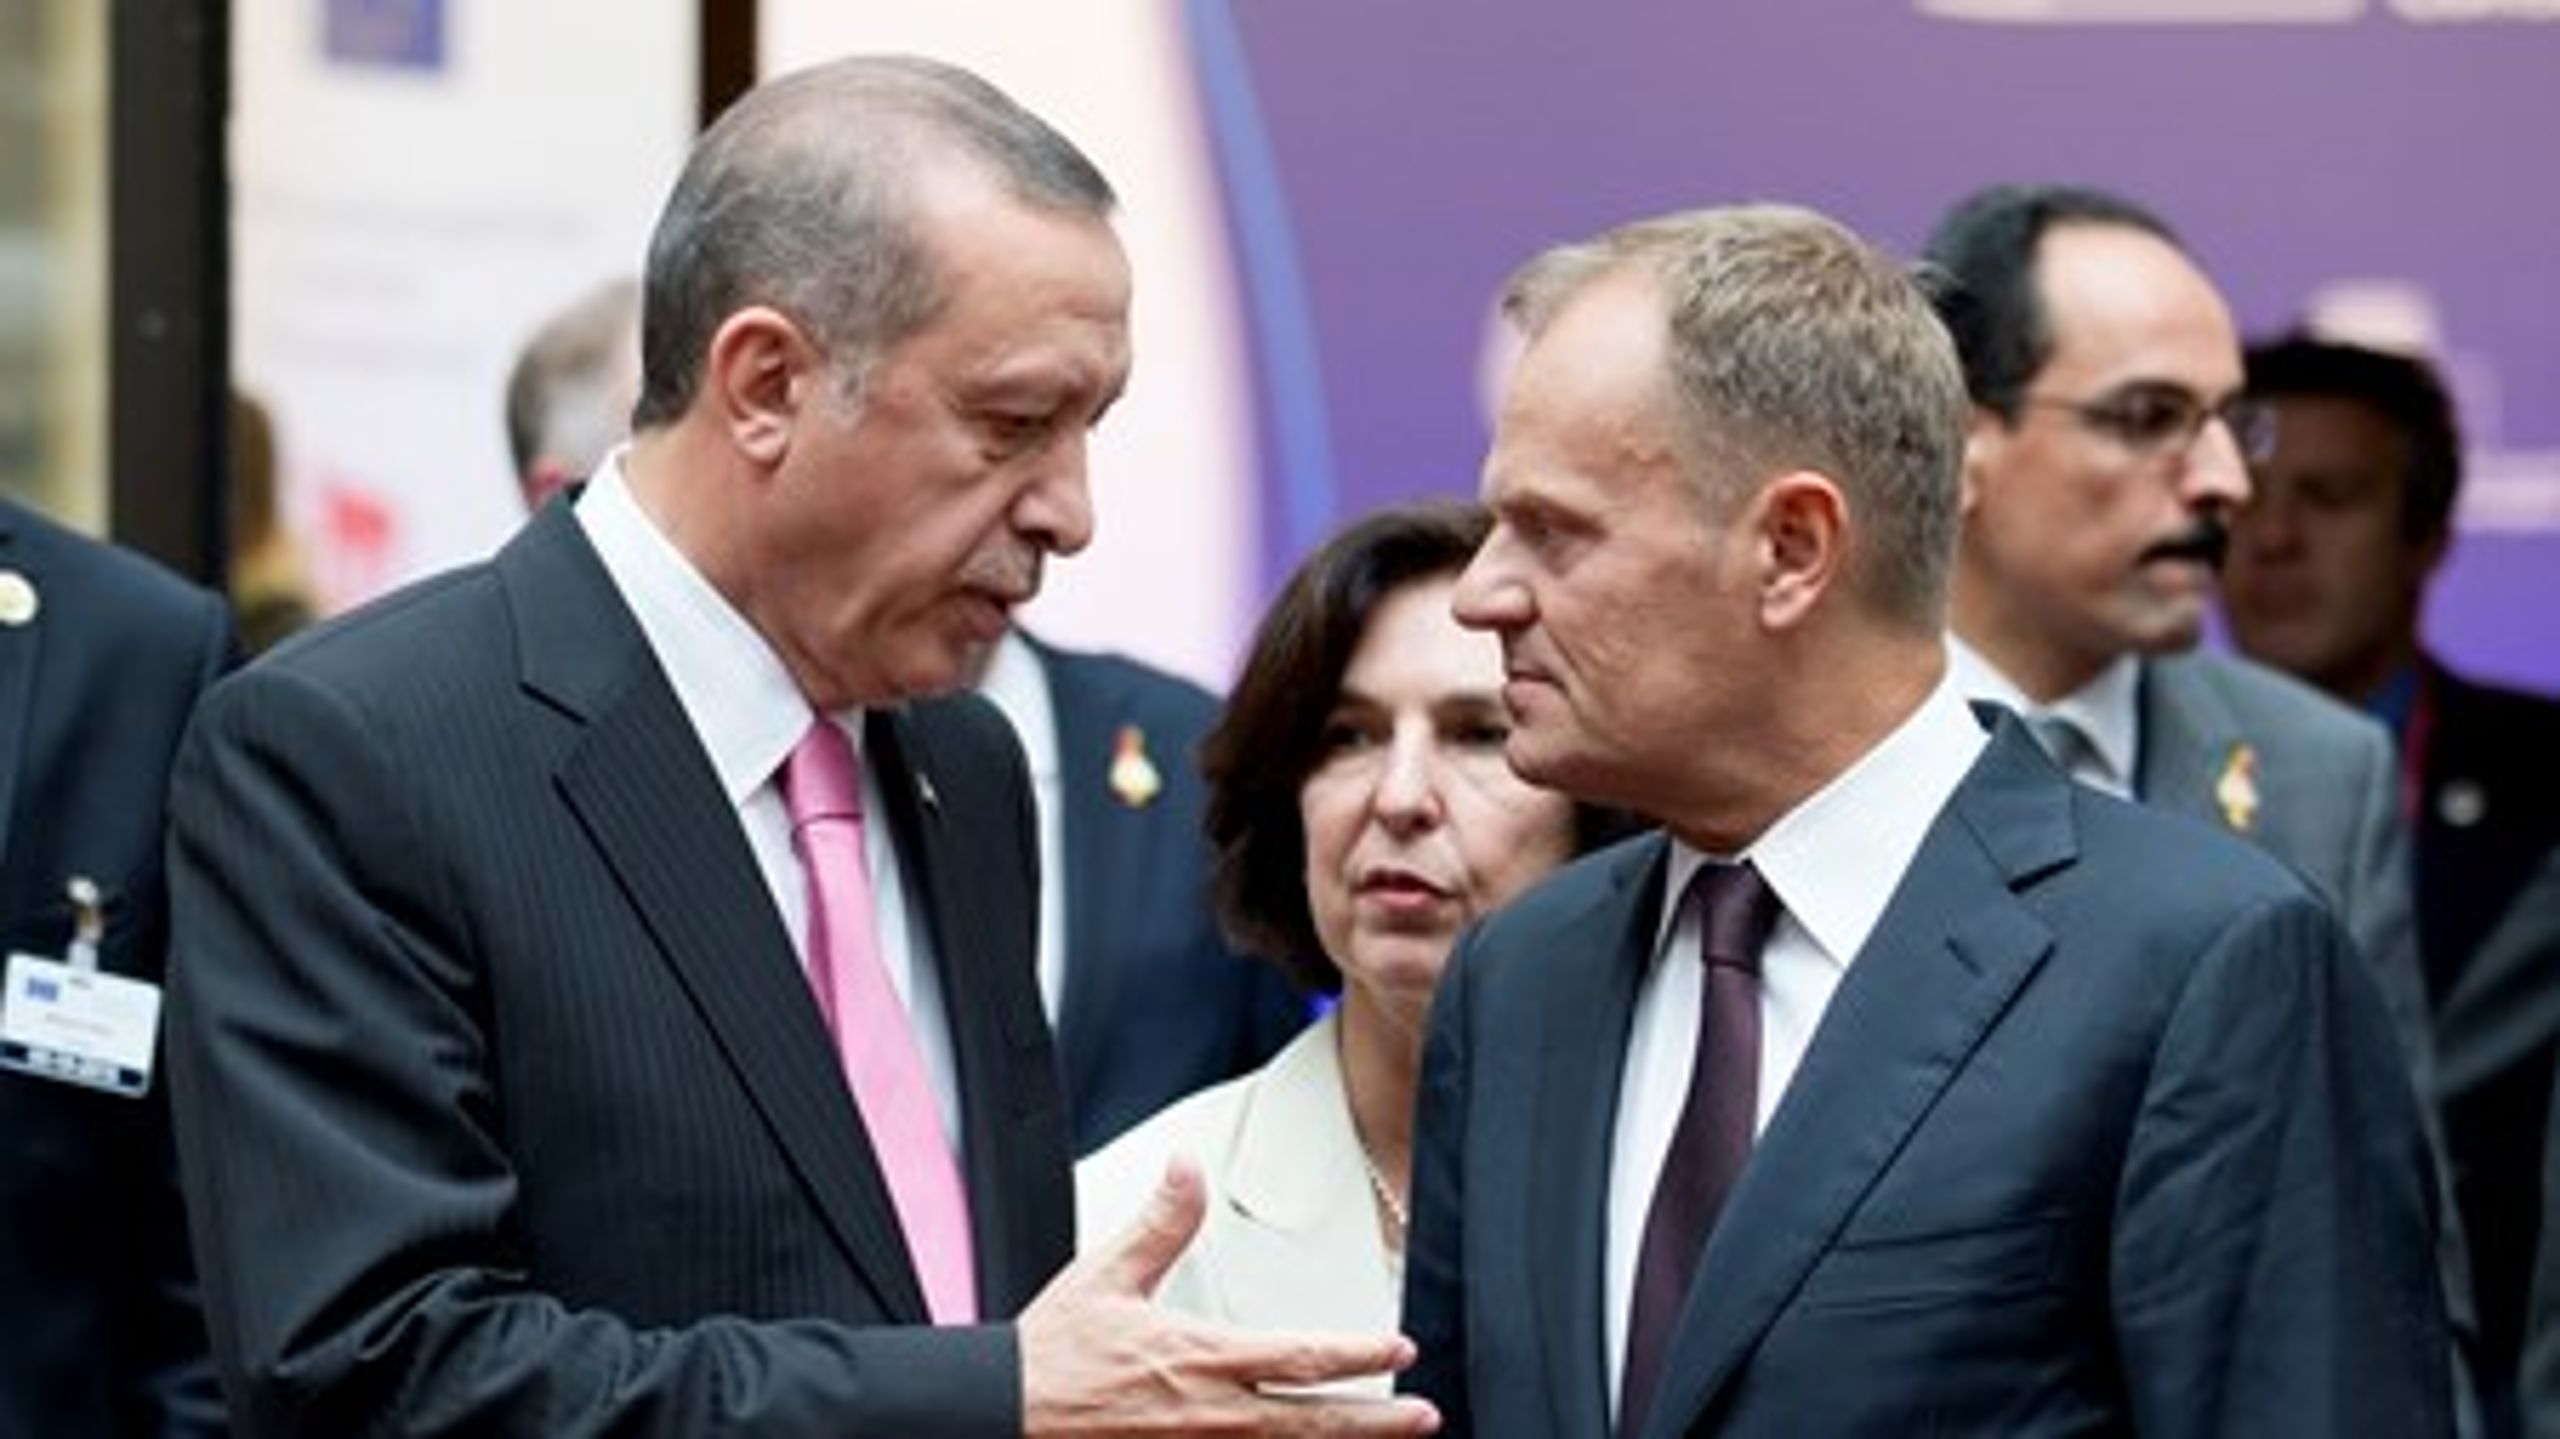 Tyrkiets præsident Recep Tayyip Erdogan mødtes mandag med formanden for Det Europæiske Råd, Donald Tusk, i Bruxelles.